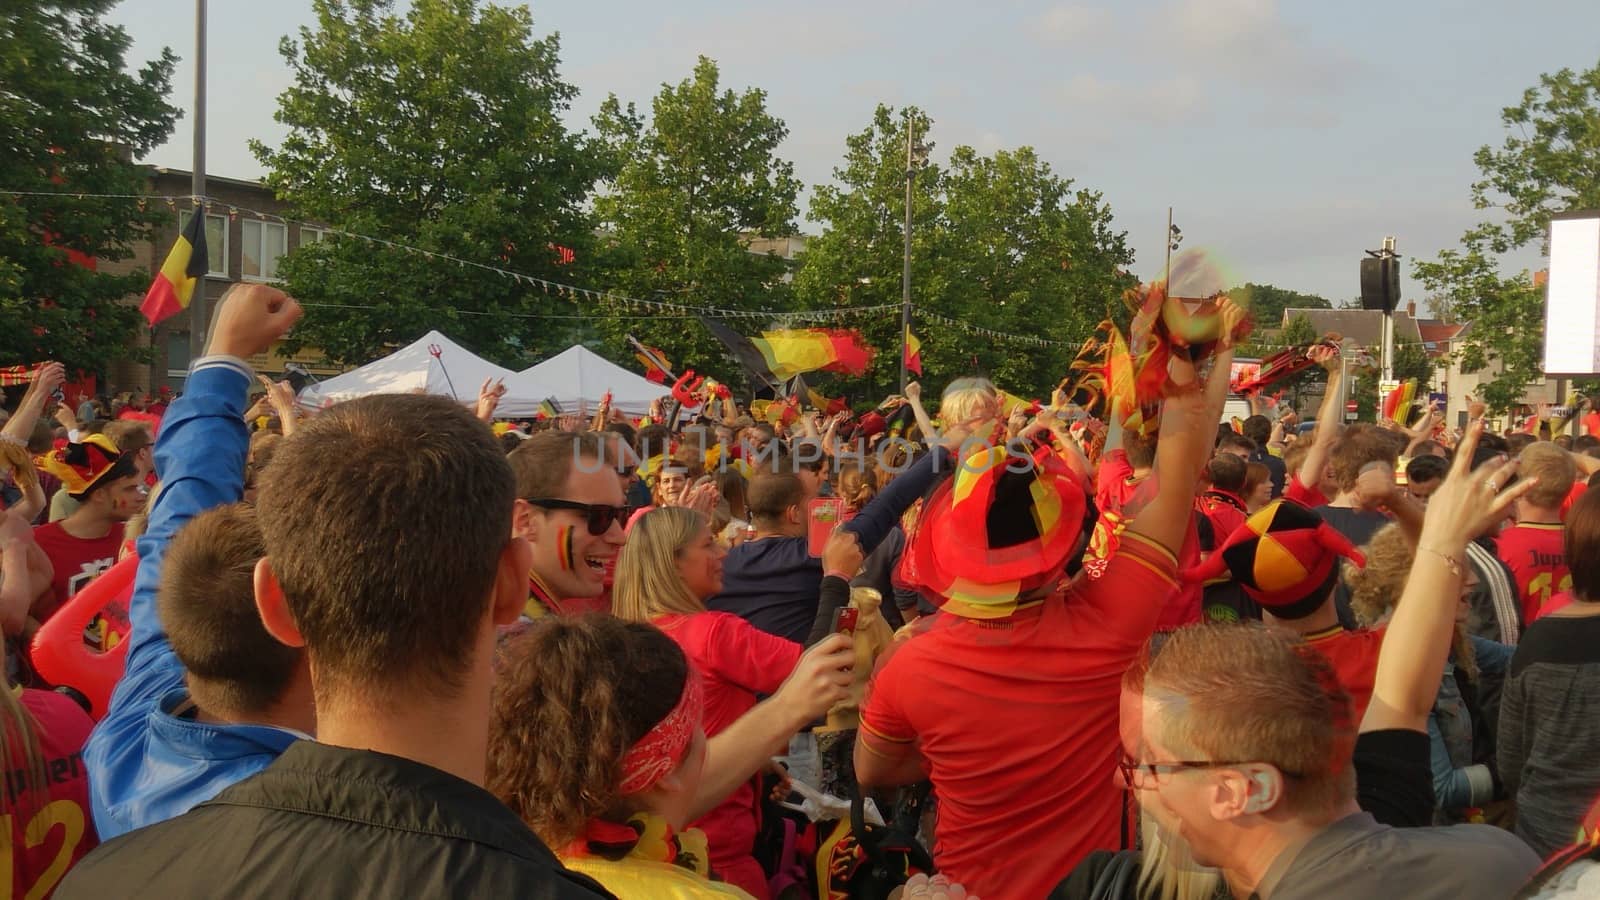 Kapellen, Belgium, June 2018, Belgian football fans celebrating a scored goal during a match